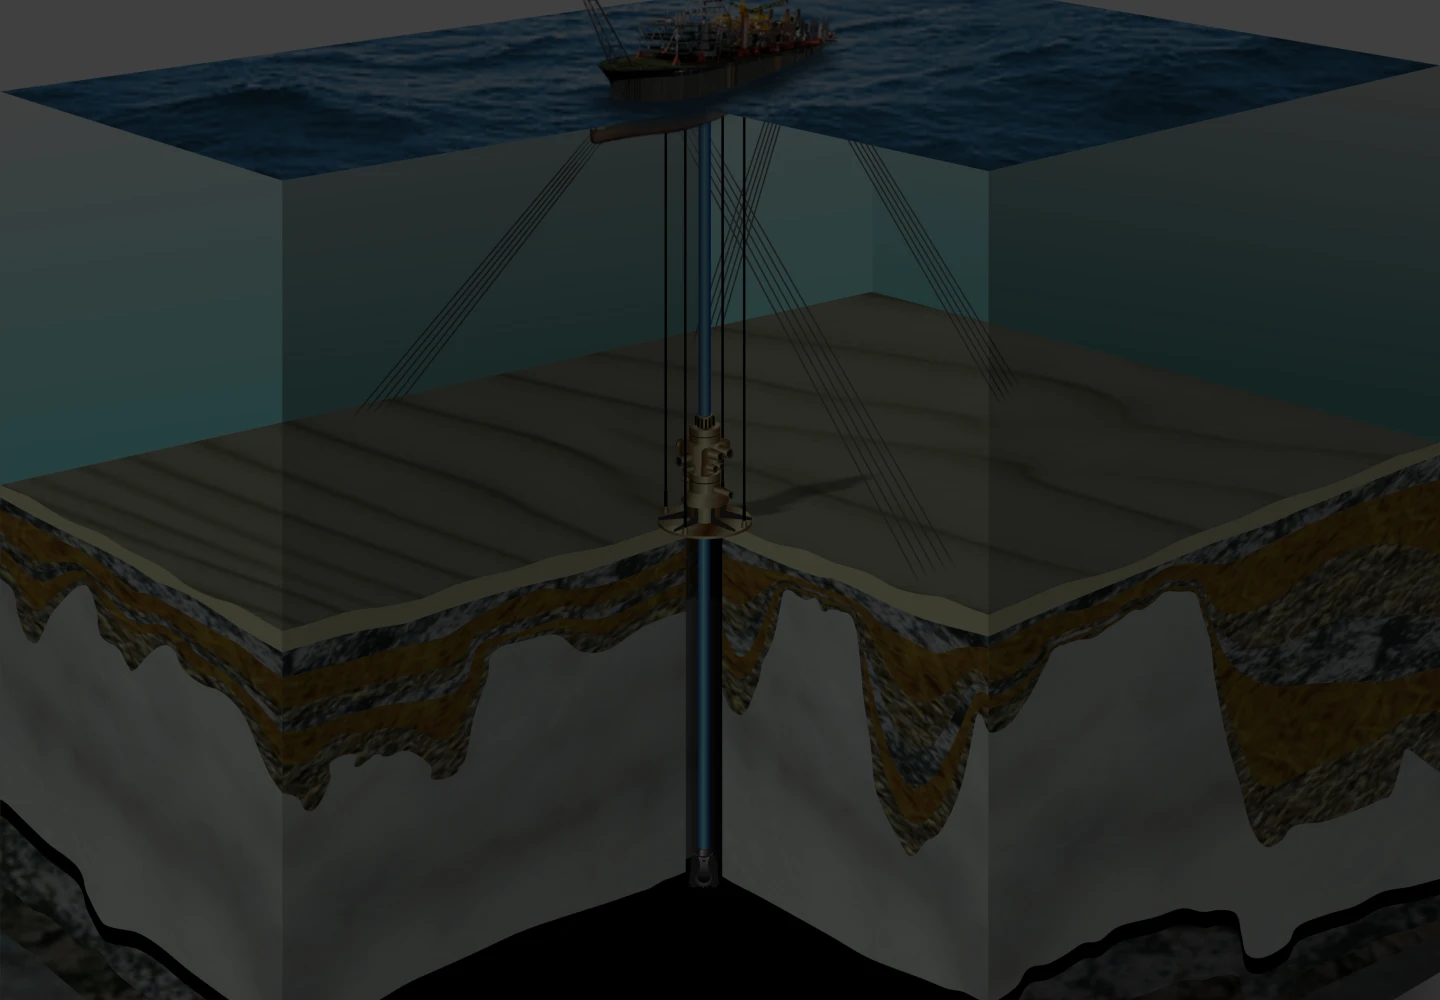 Ilustração em 3D mostrando as diversas camadas geológicas até chegar a camada do pré-sal.